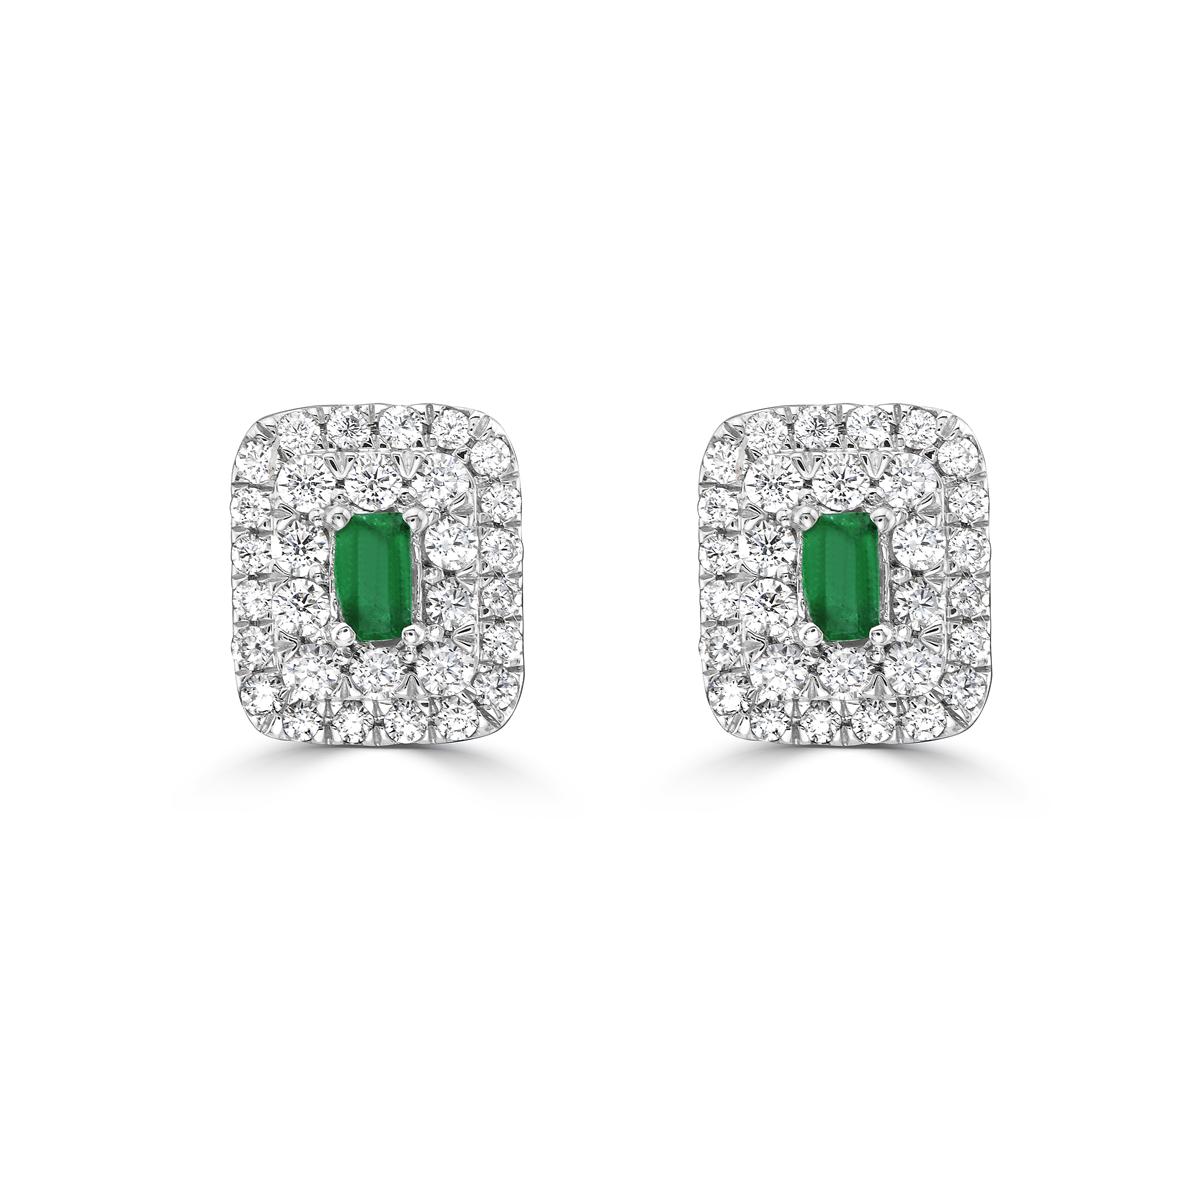 Gönnen Sie sich Luxus mit unseren Smaragd-Baguette-Diamant-Doppelhalo-Ohrsteckern. Diese Smaragd-Ohrstecker sind mit atemberaubenden Smaragden im Baguetteschliff besetzt und strahlen Raffinesse und Exklusivität aus. Das schillernde doppelte